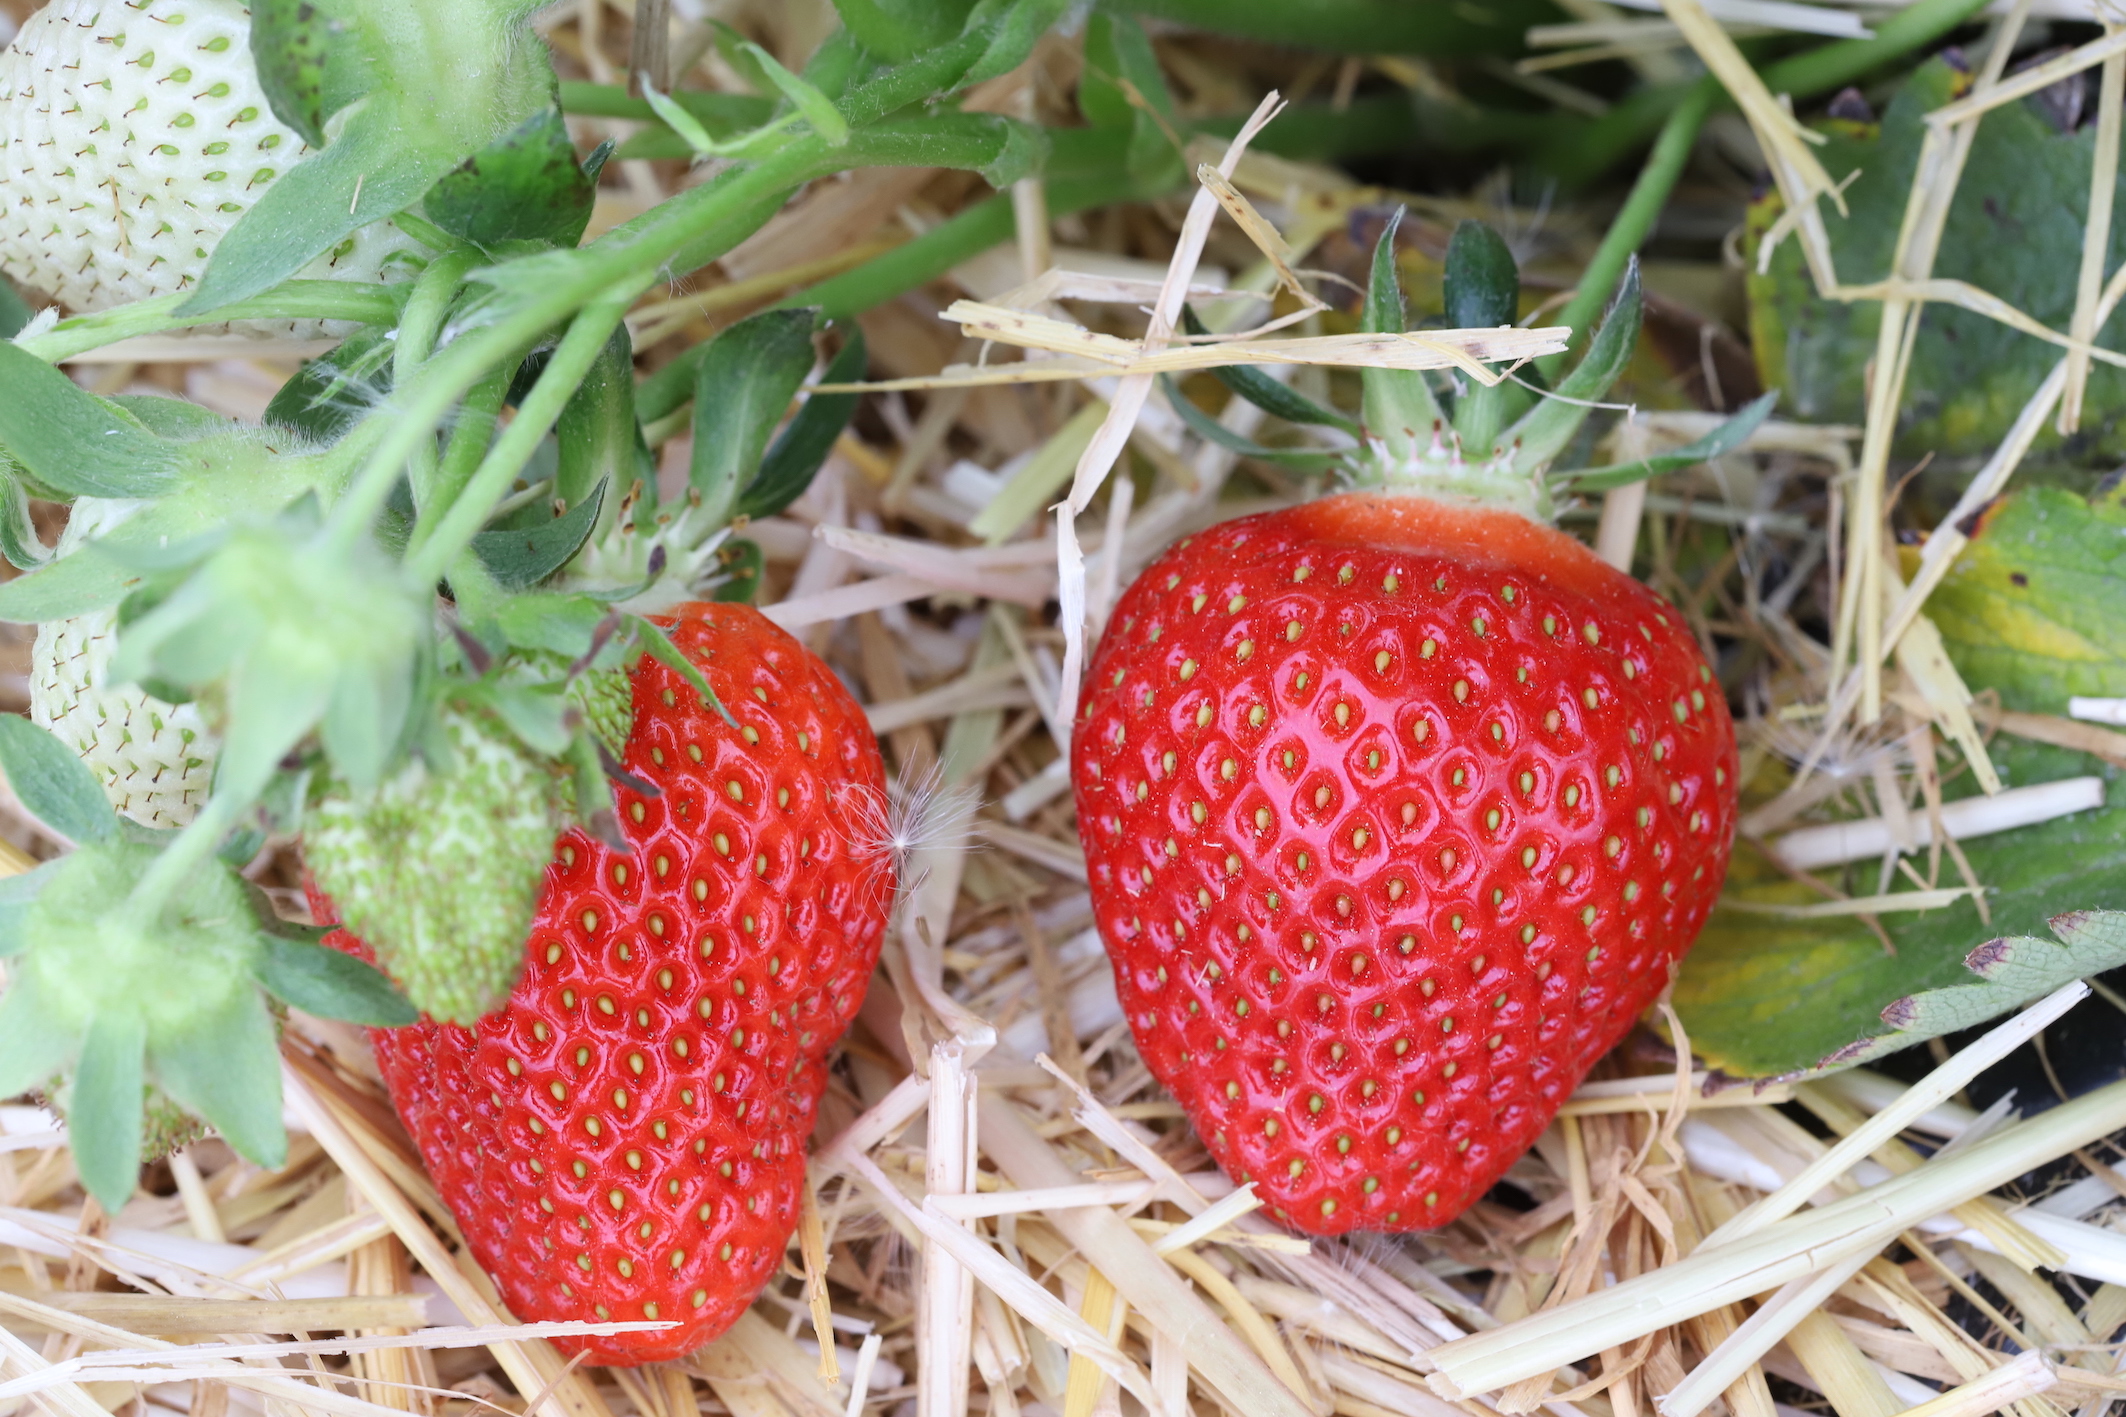 Variationsfaktoren der geschmacklichen und ernährungsphysiologischen Qualität von Erdbeeren